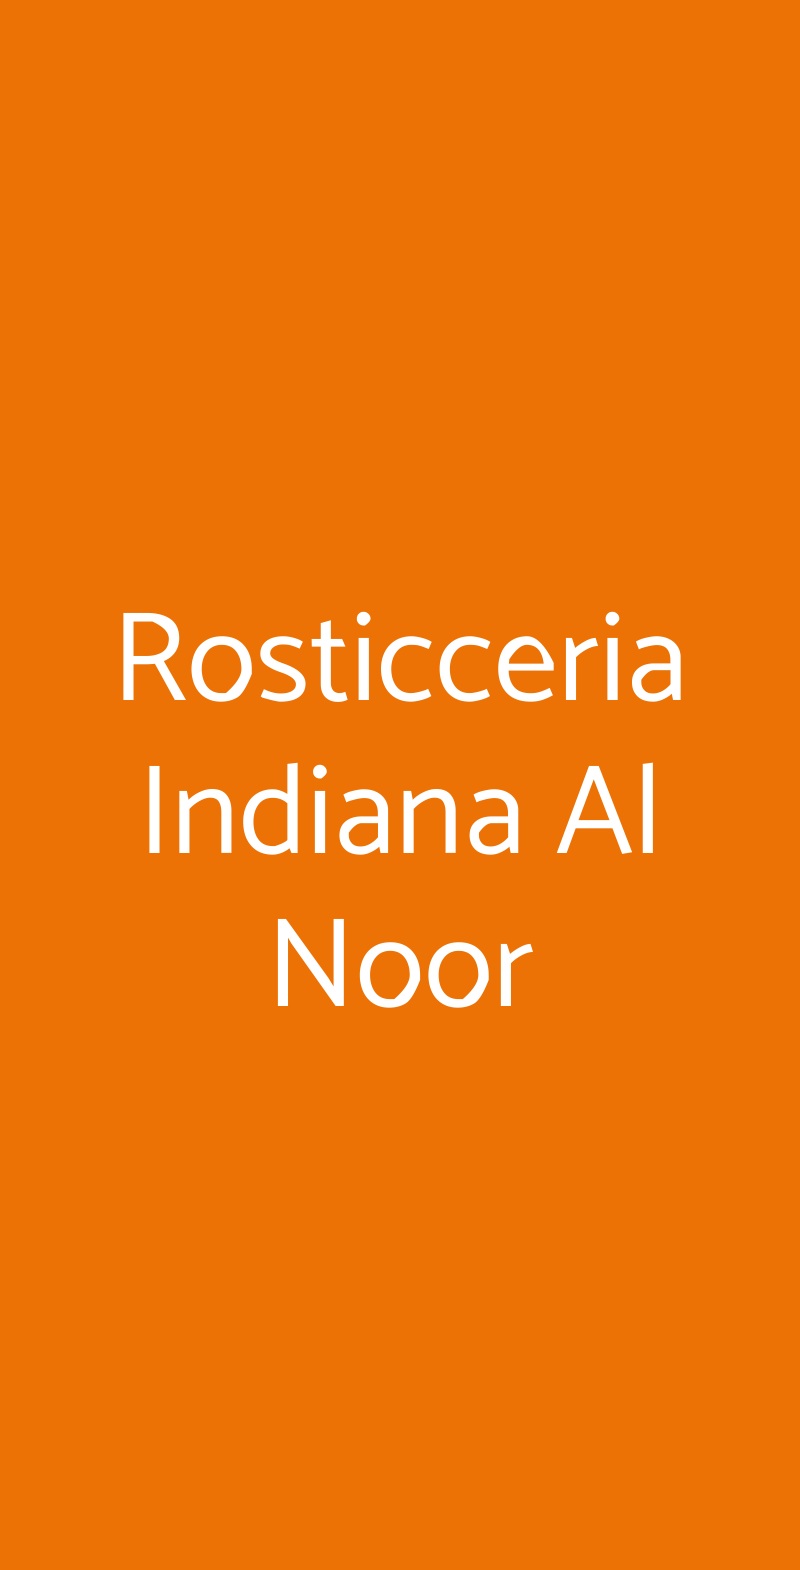 Rosticceria Indiana Al Noor Milano menù 1 pagina